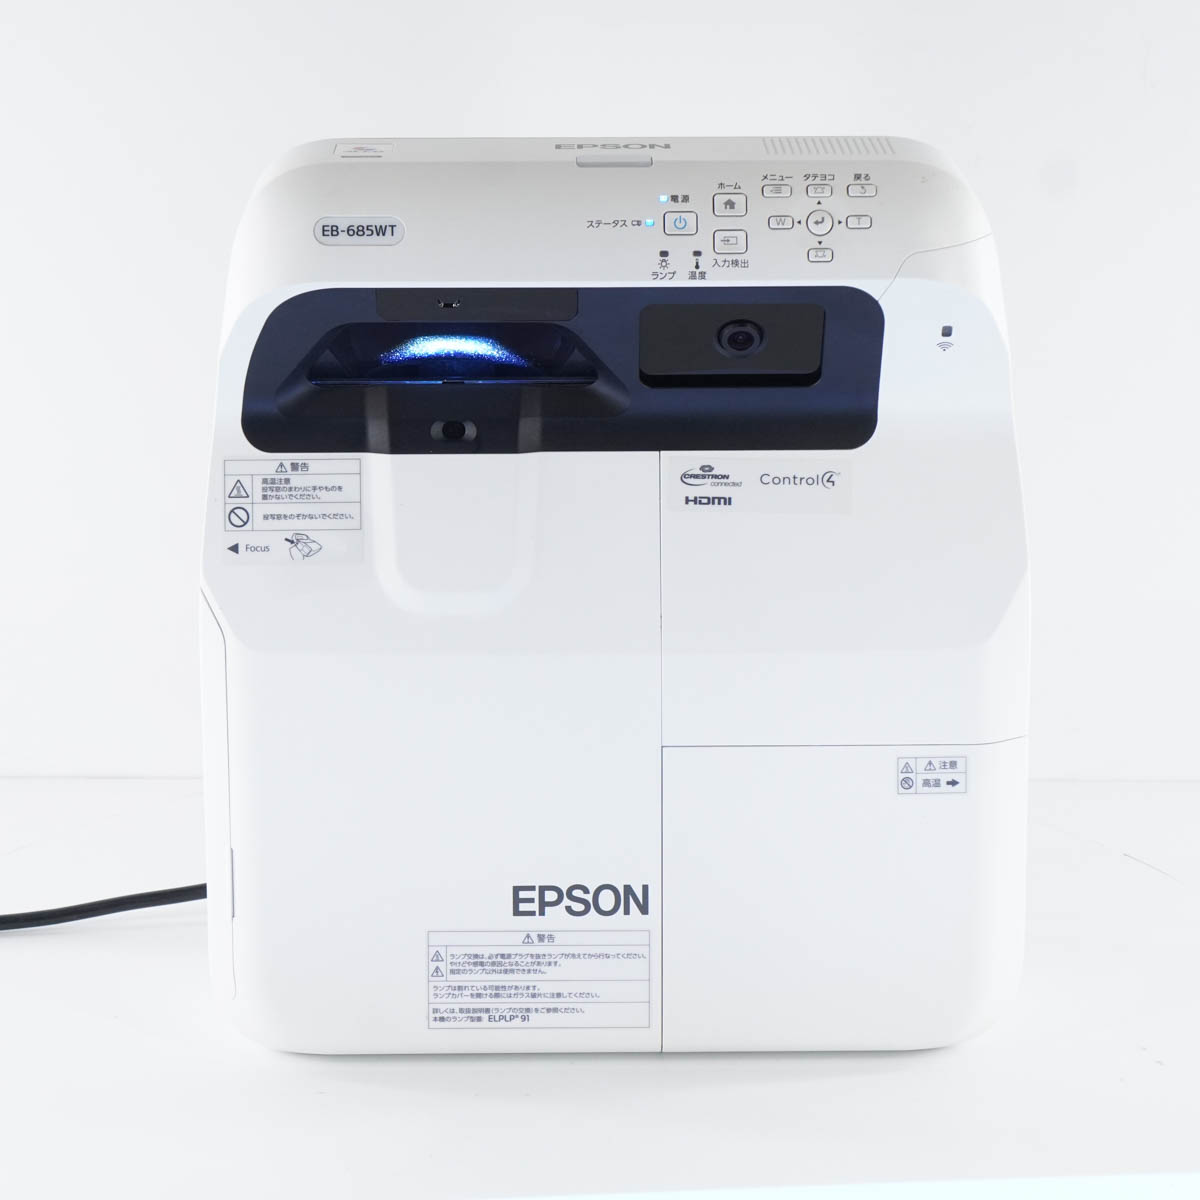 日本産 エプソン EPSON 超短焦点PJ プロジェクター - EB-685WT EB 